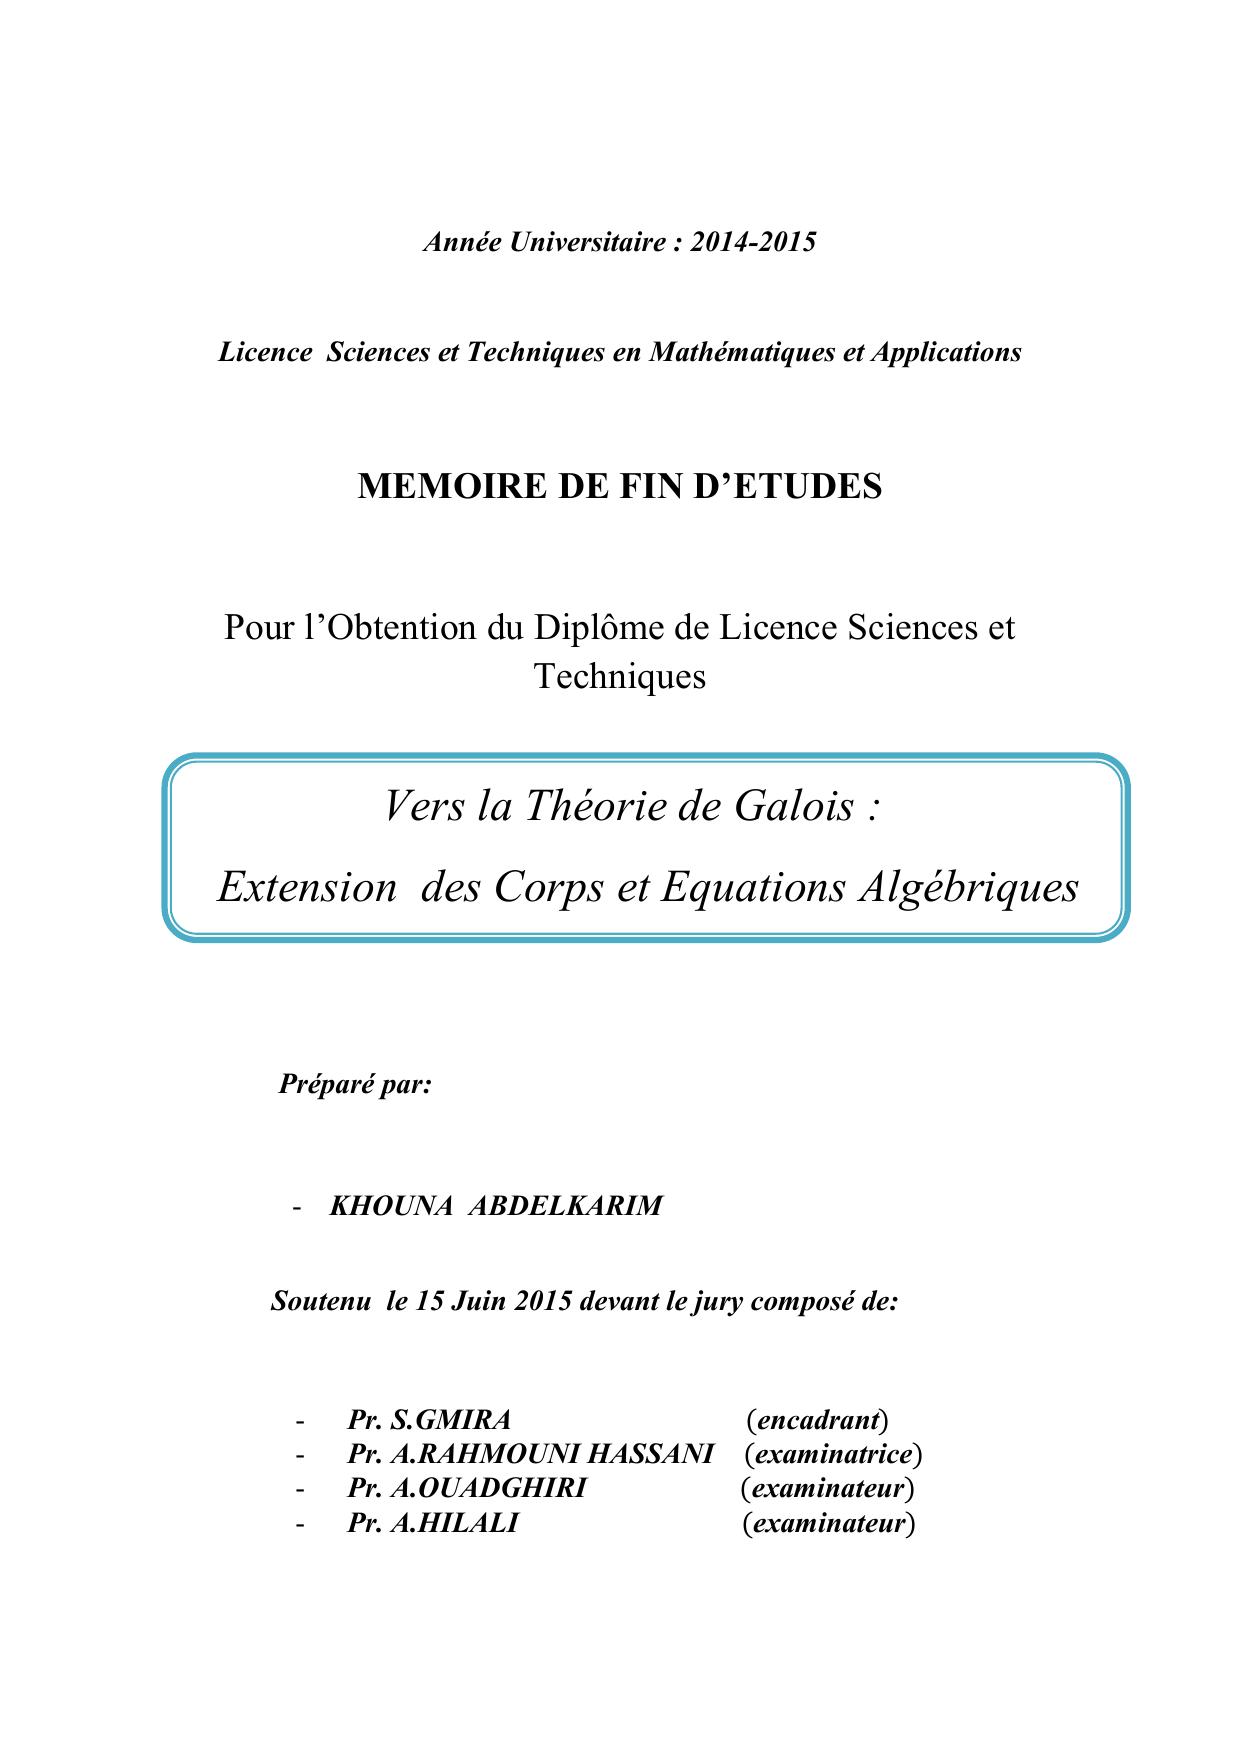 Vers la Théorie de Galois : Extension des Corps et Equations Algébriques